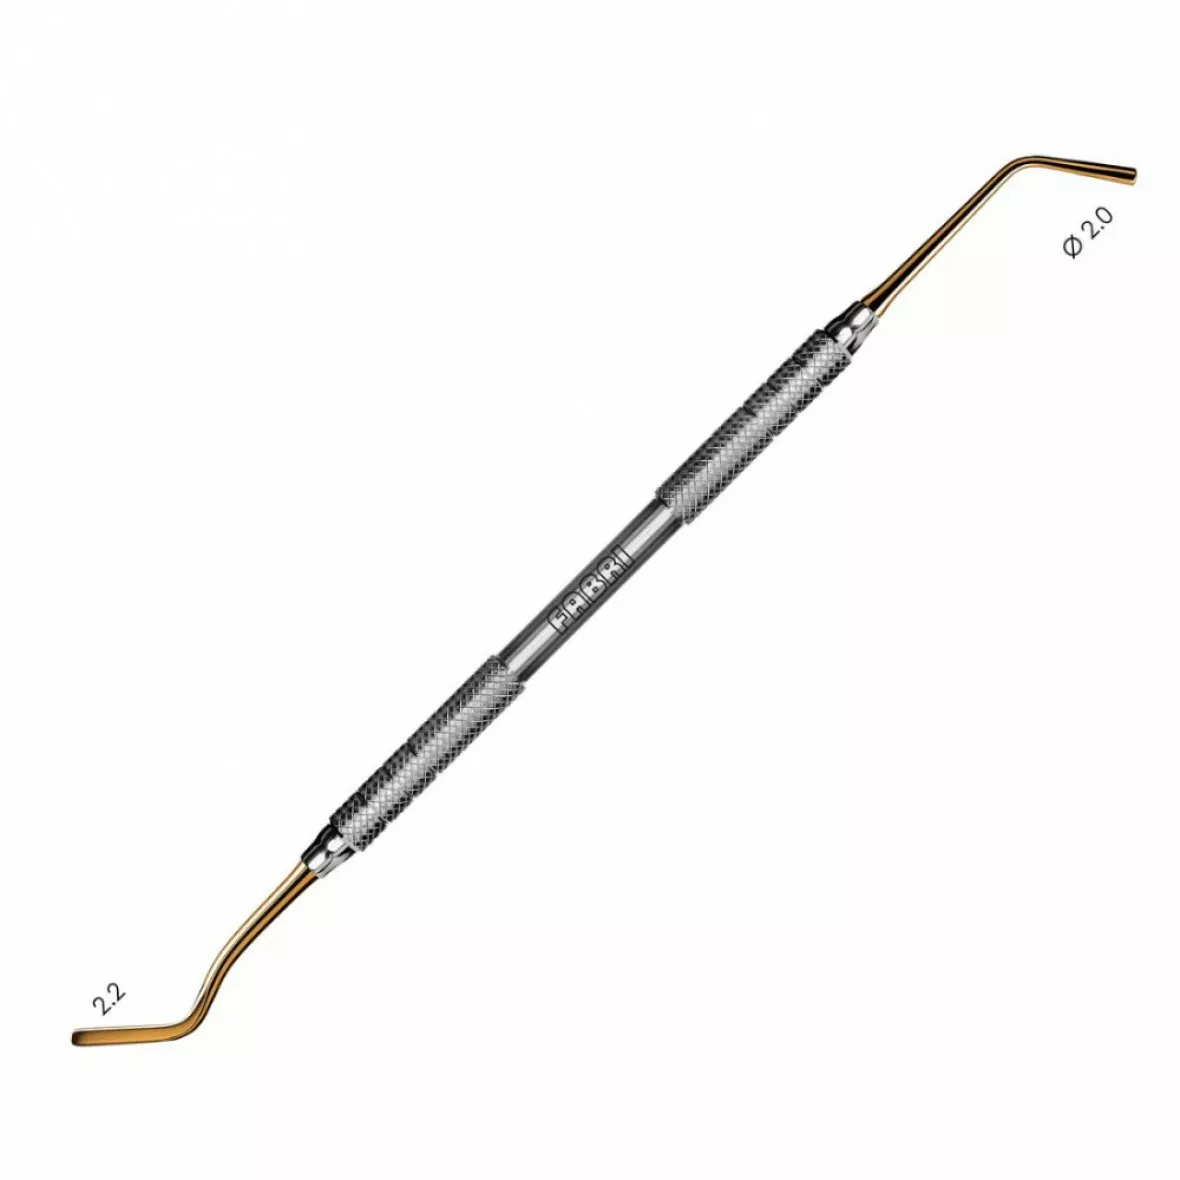 1324 TiN-Удлиненная средняя гладилка с обратноконусовидным штопфером  2mm. Ручка  6mm. Покрытие Gold